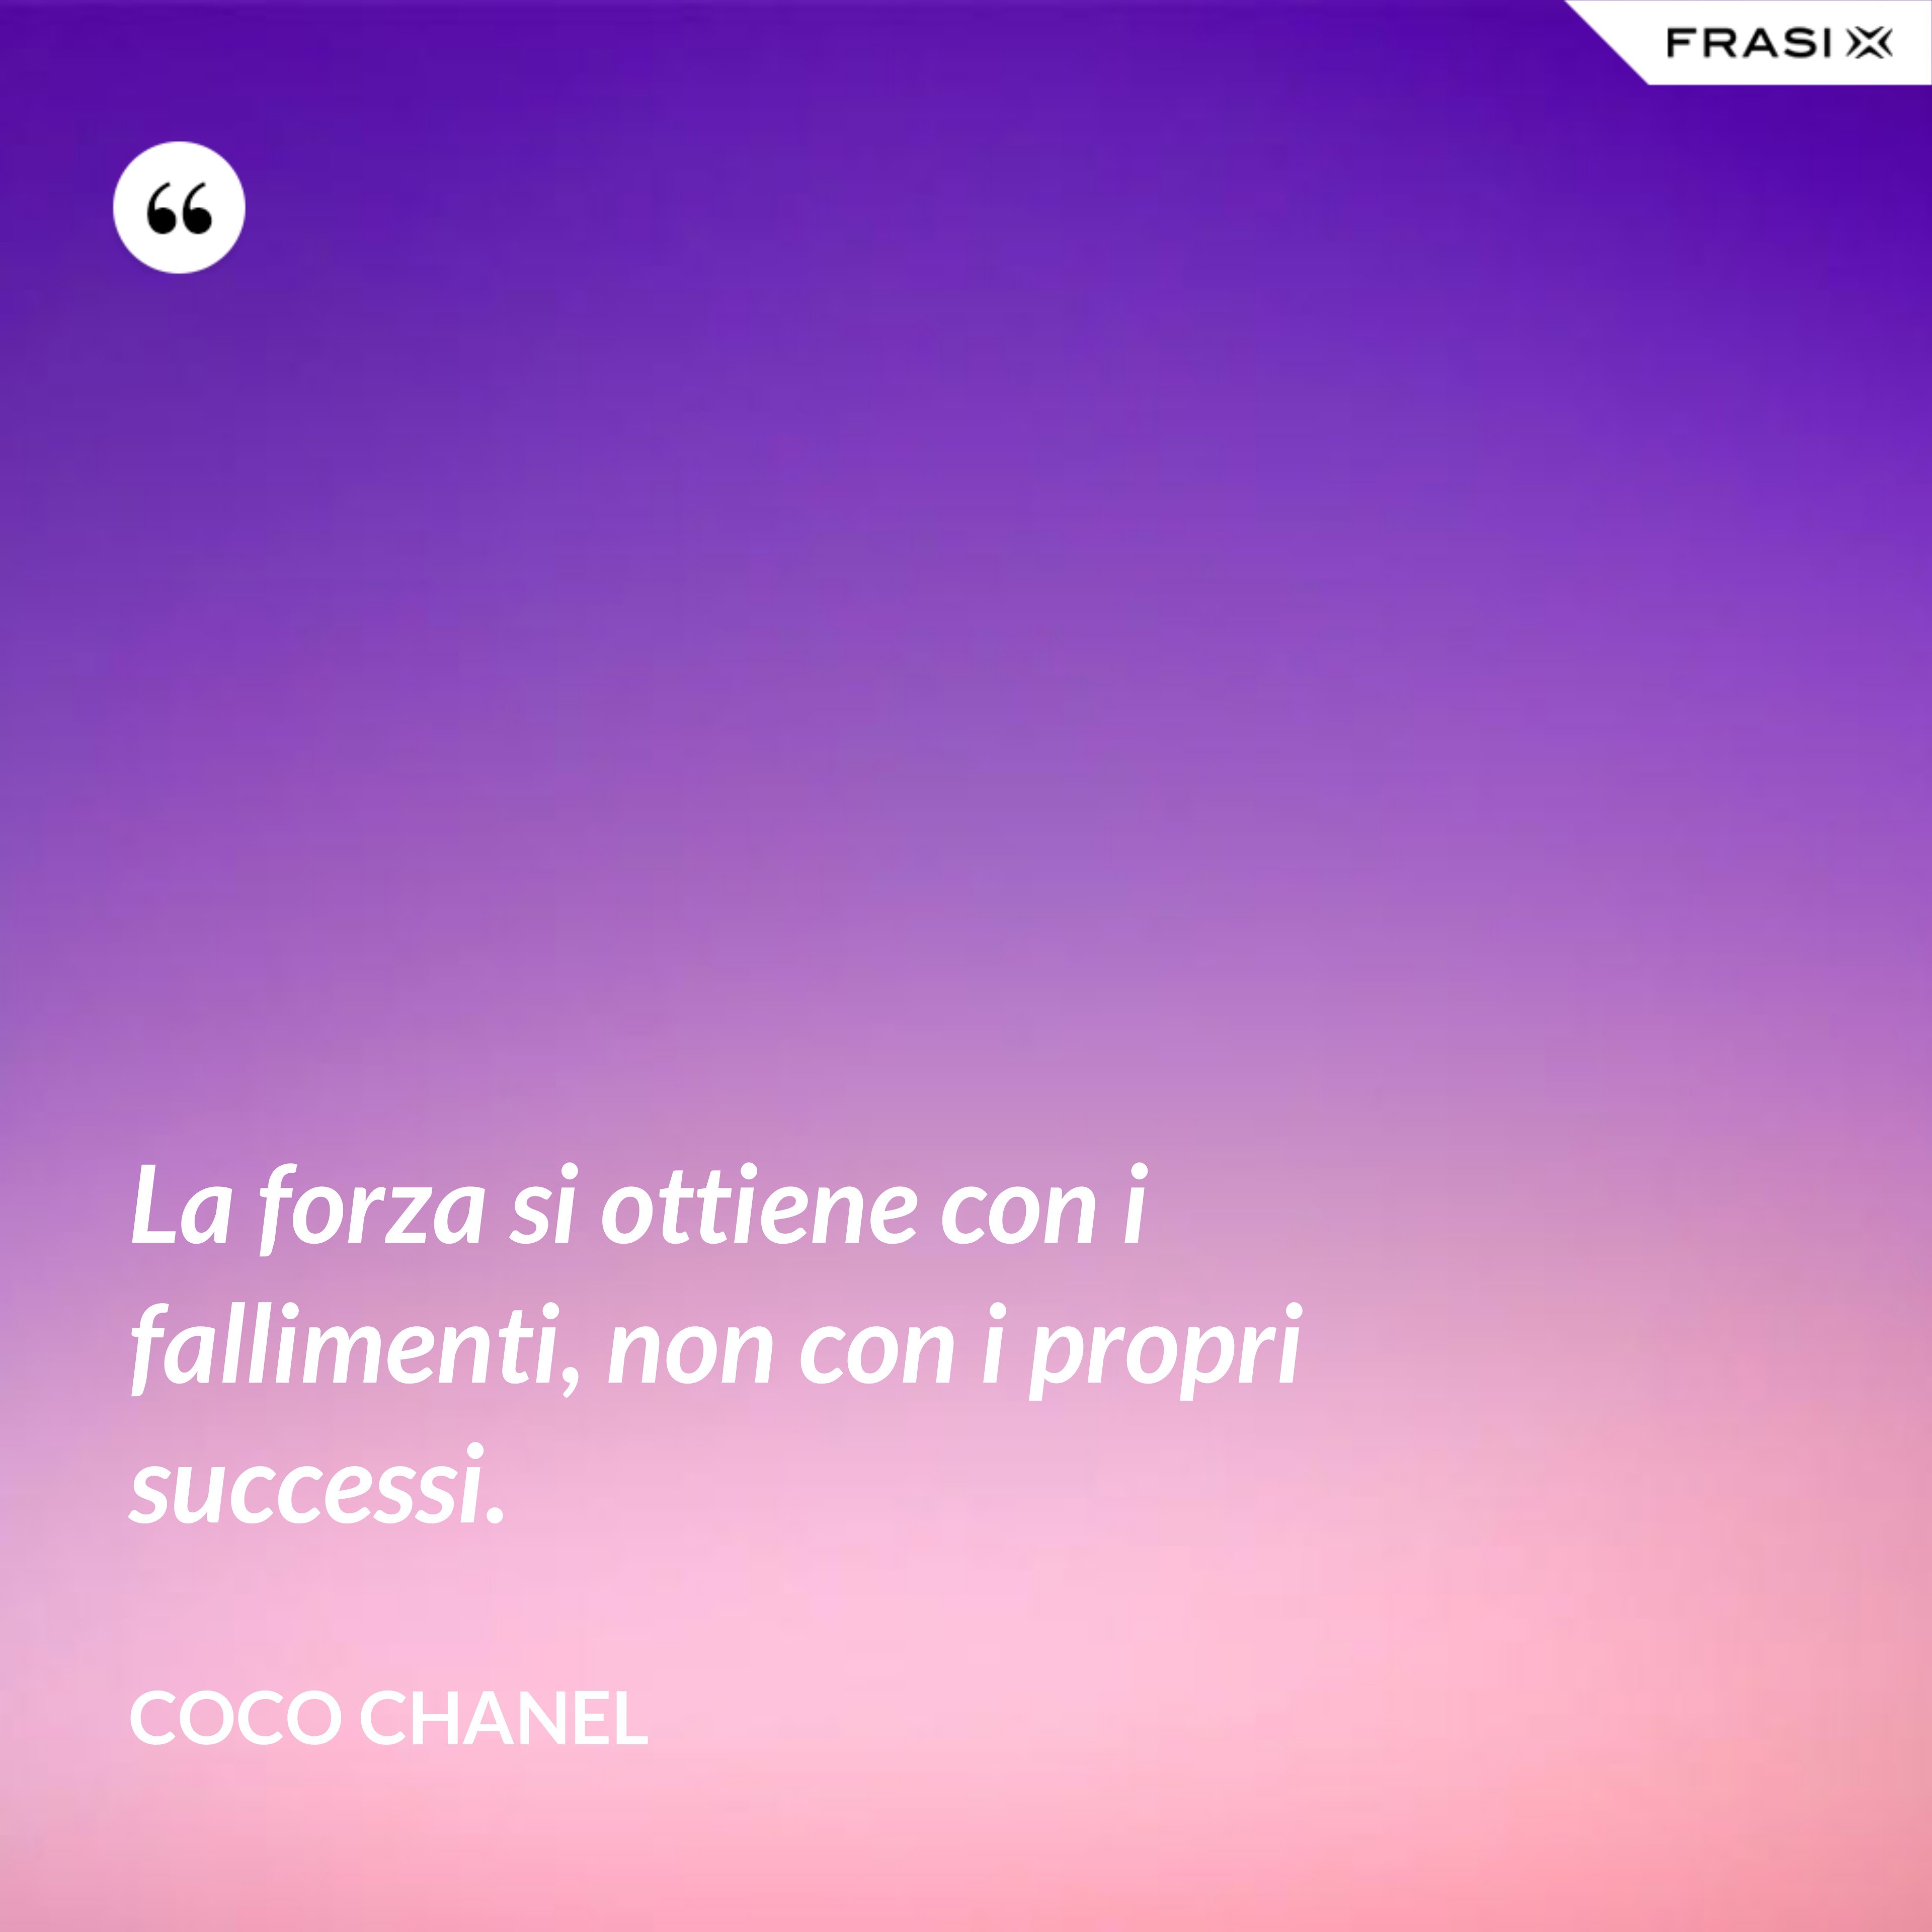 La forza si ottiene con i fallimenti, non con i propri successi. - Coco Chanel